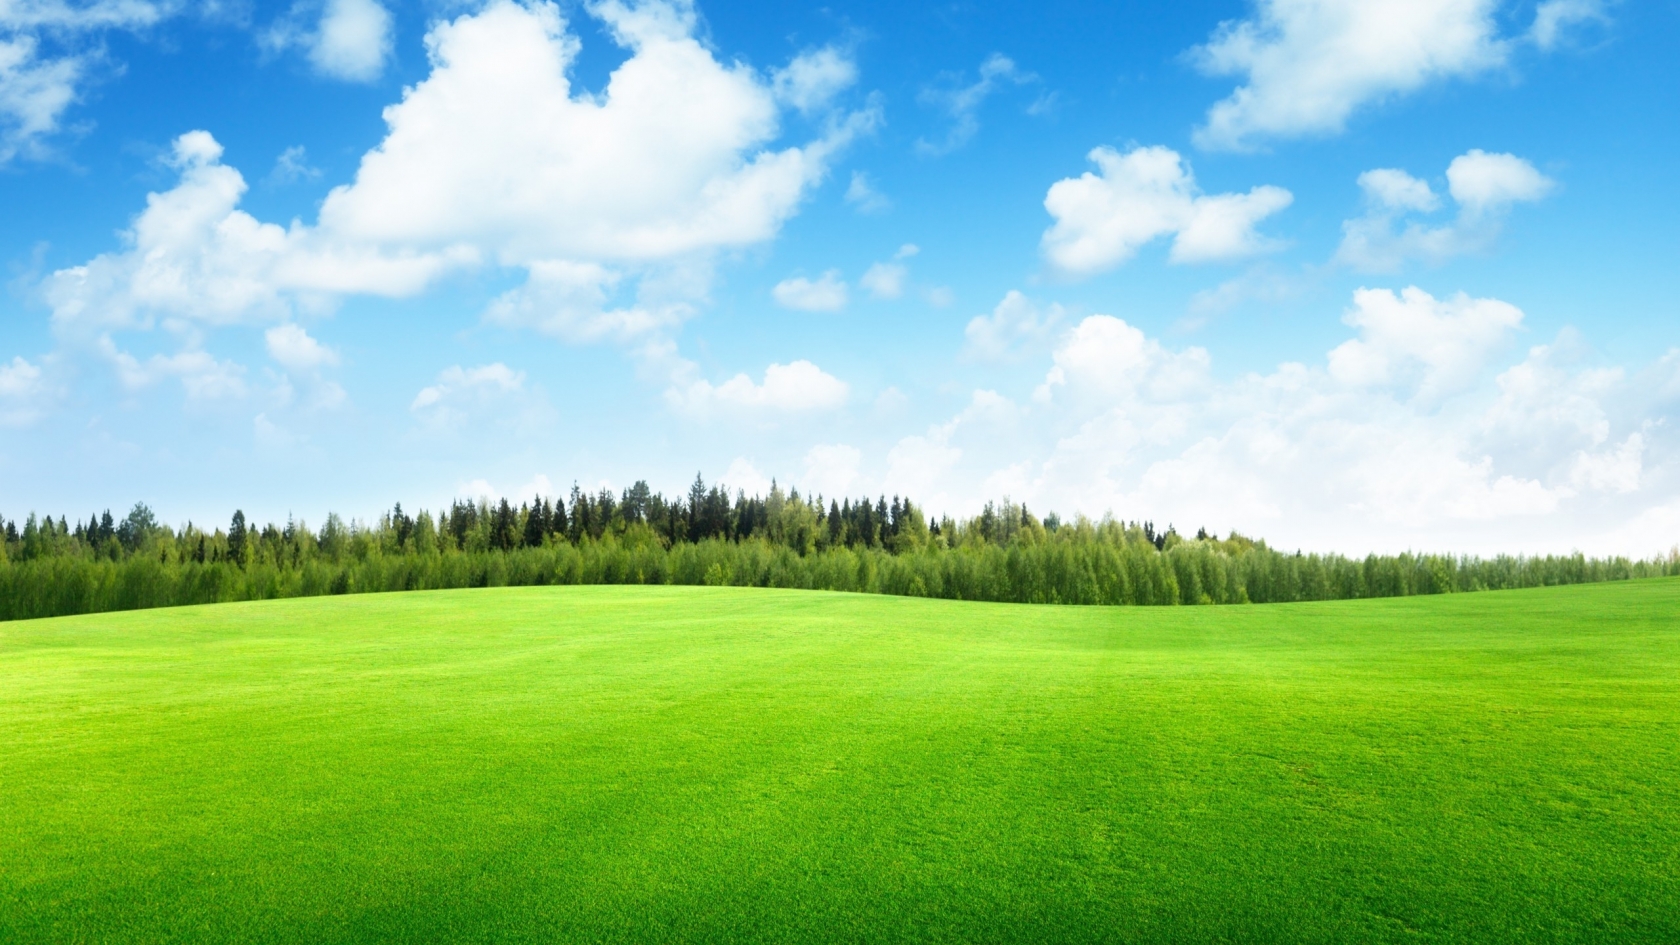 Beaufitul Green Grass Field for 1680 x 945 HDTV resolution